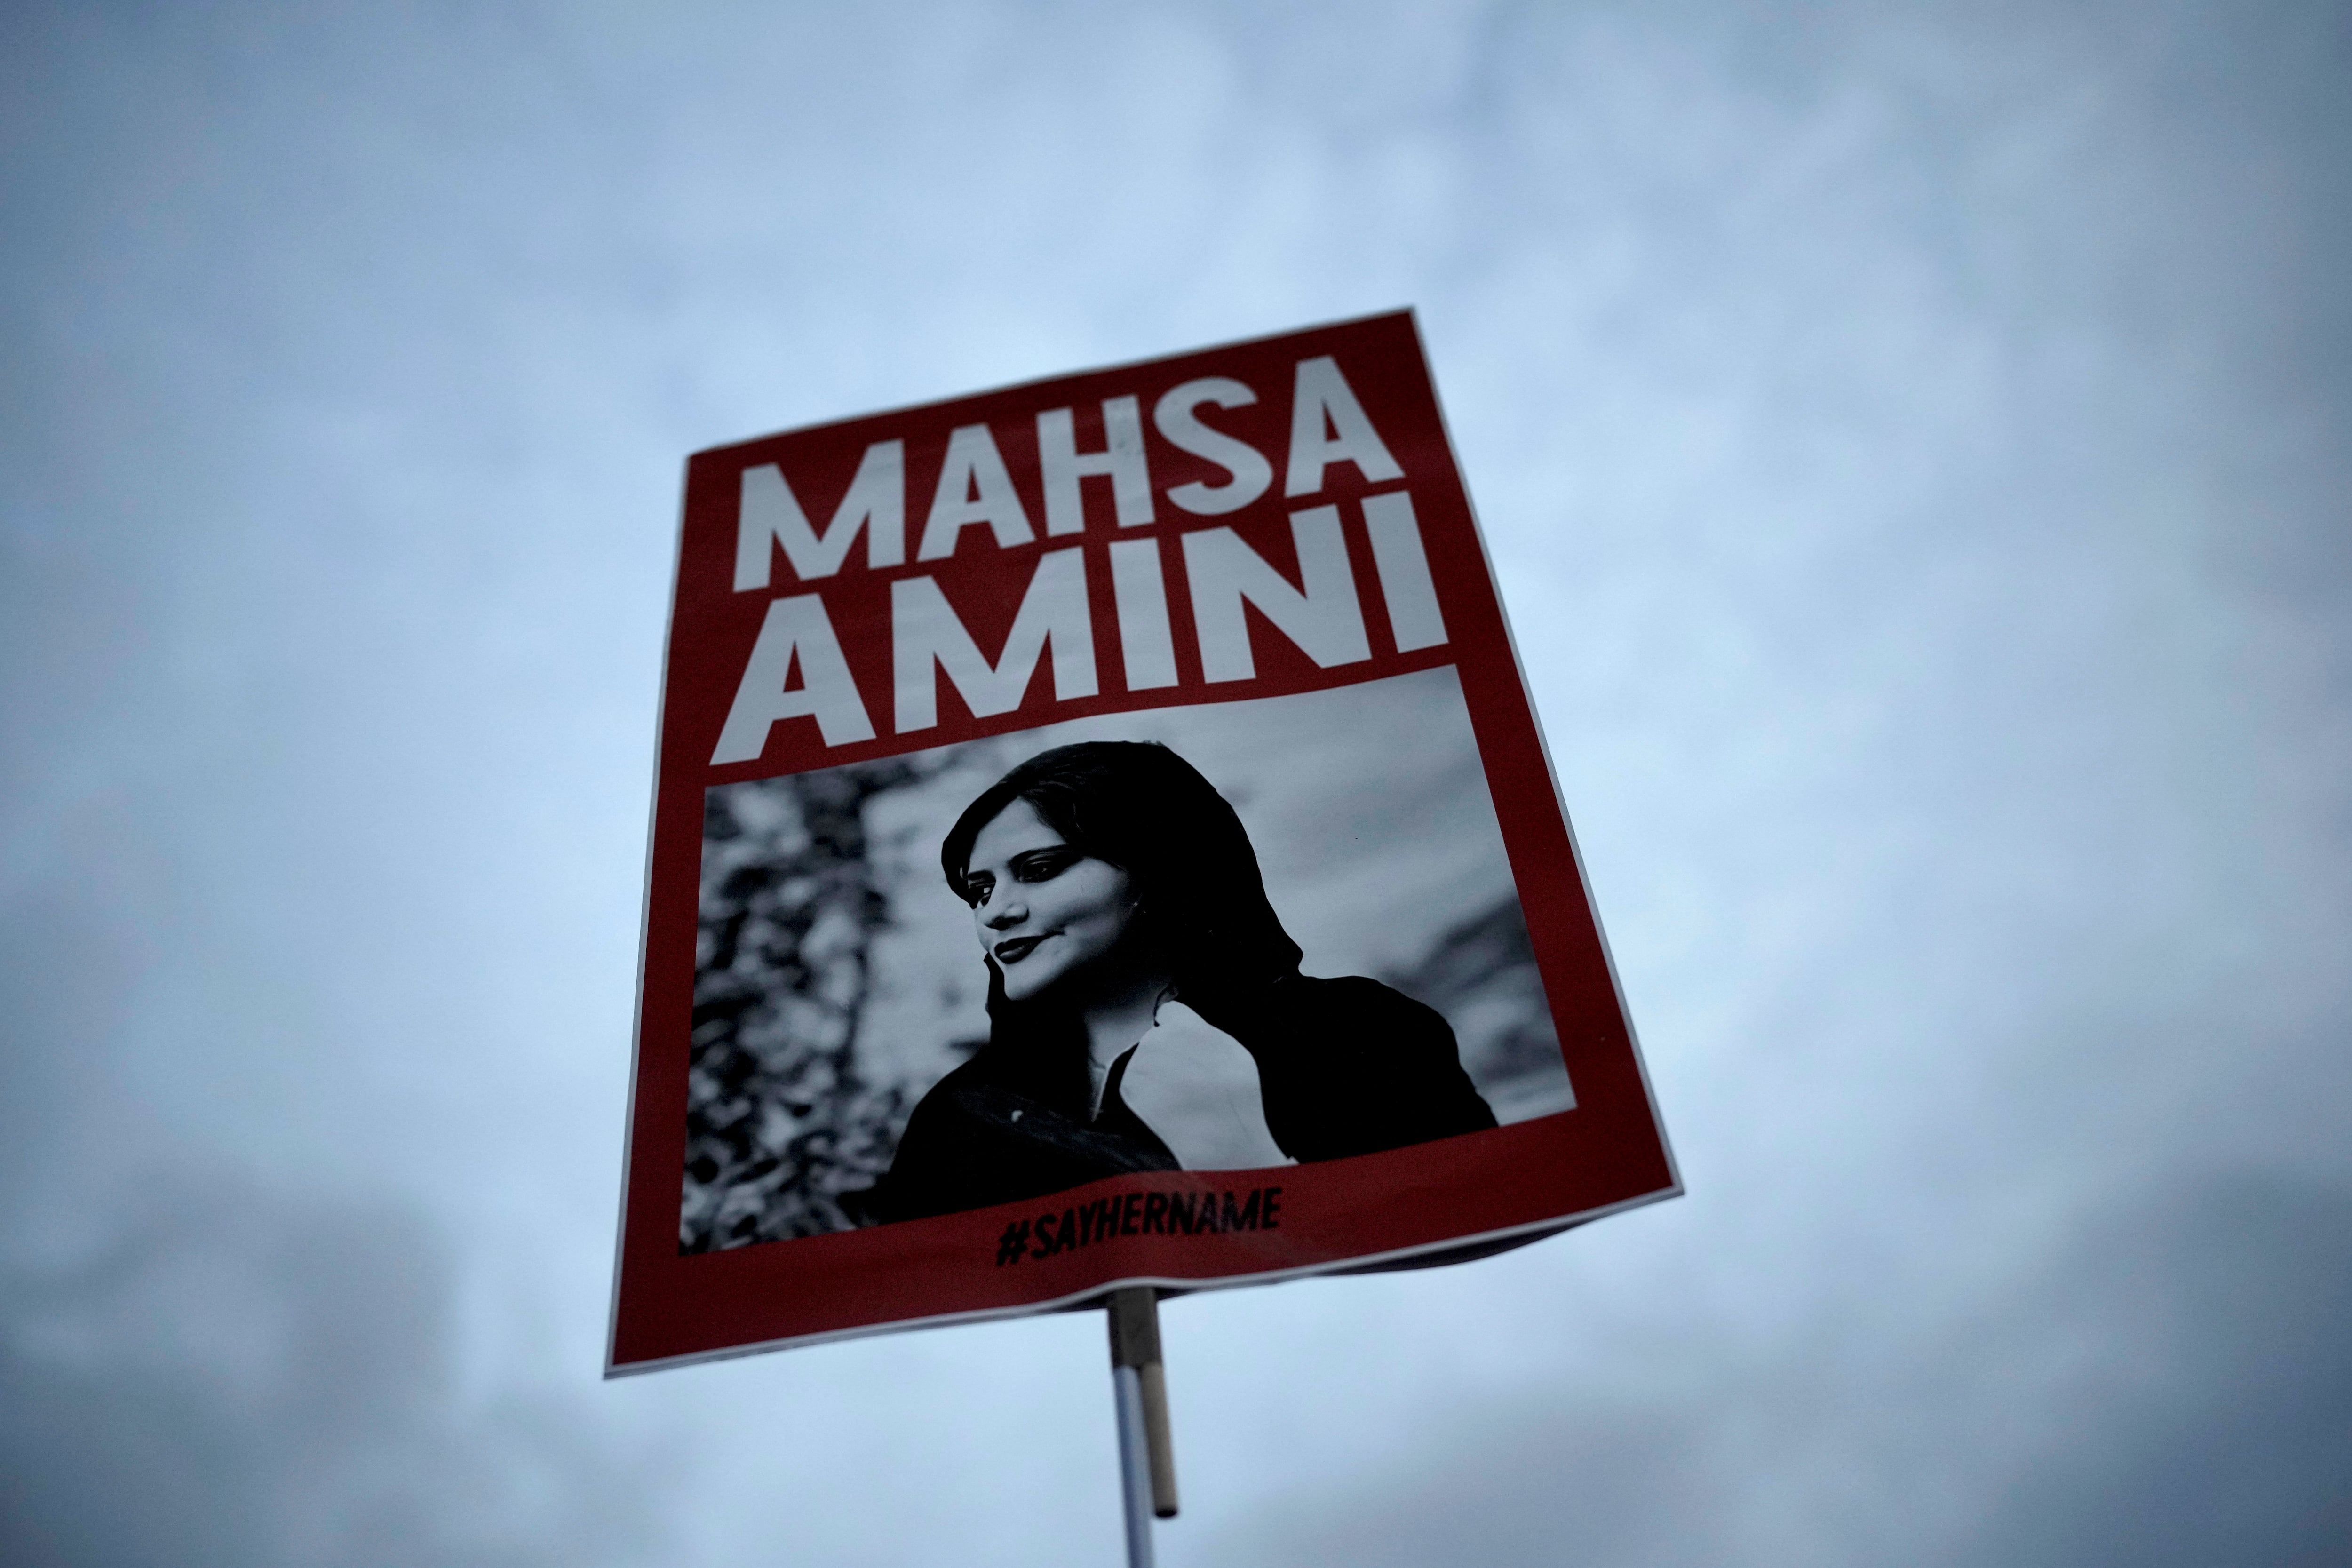 Una persona sostiene un cartel con una imagen de la iraní Mahsa Amini durante una protesta contra su muerte, en Berlín, Alemania, el 28 de septiembre de 2022 (Foto AP/Markus Schreiber/Archivo)